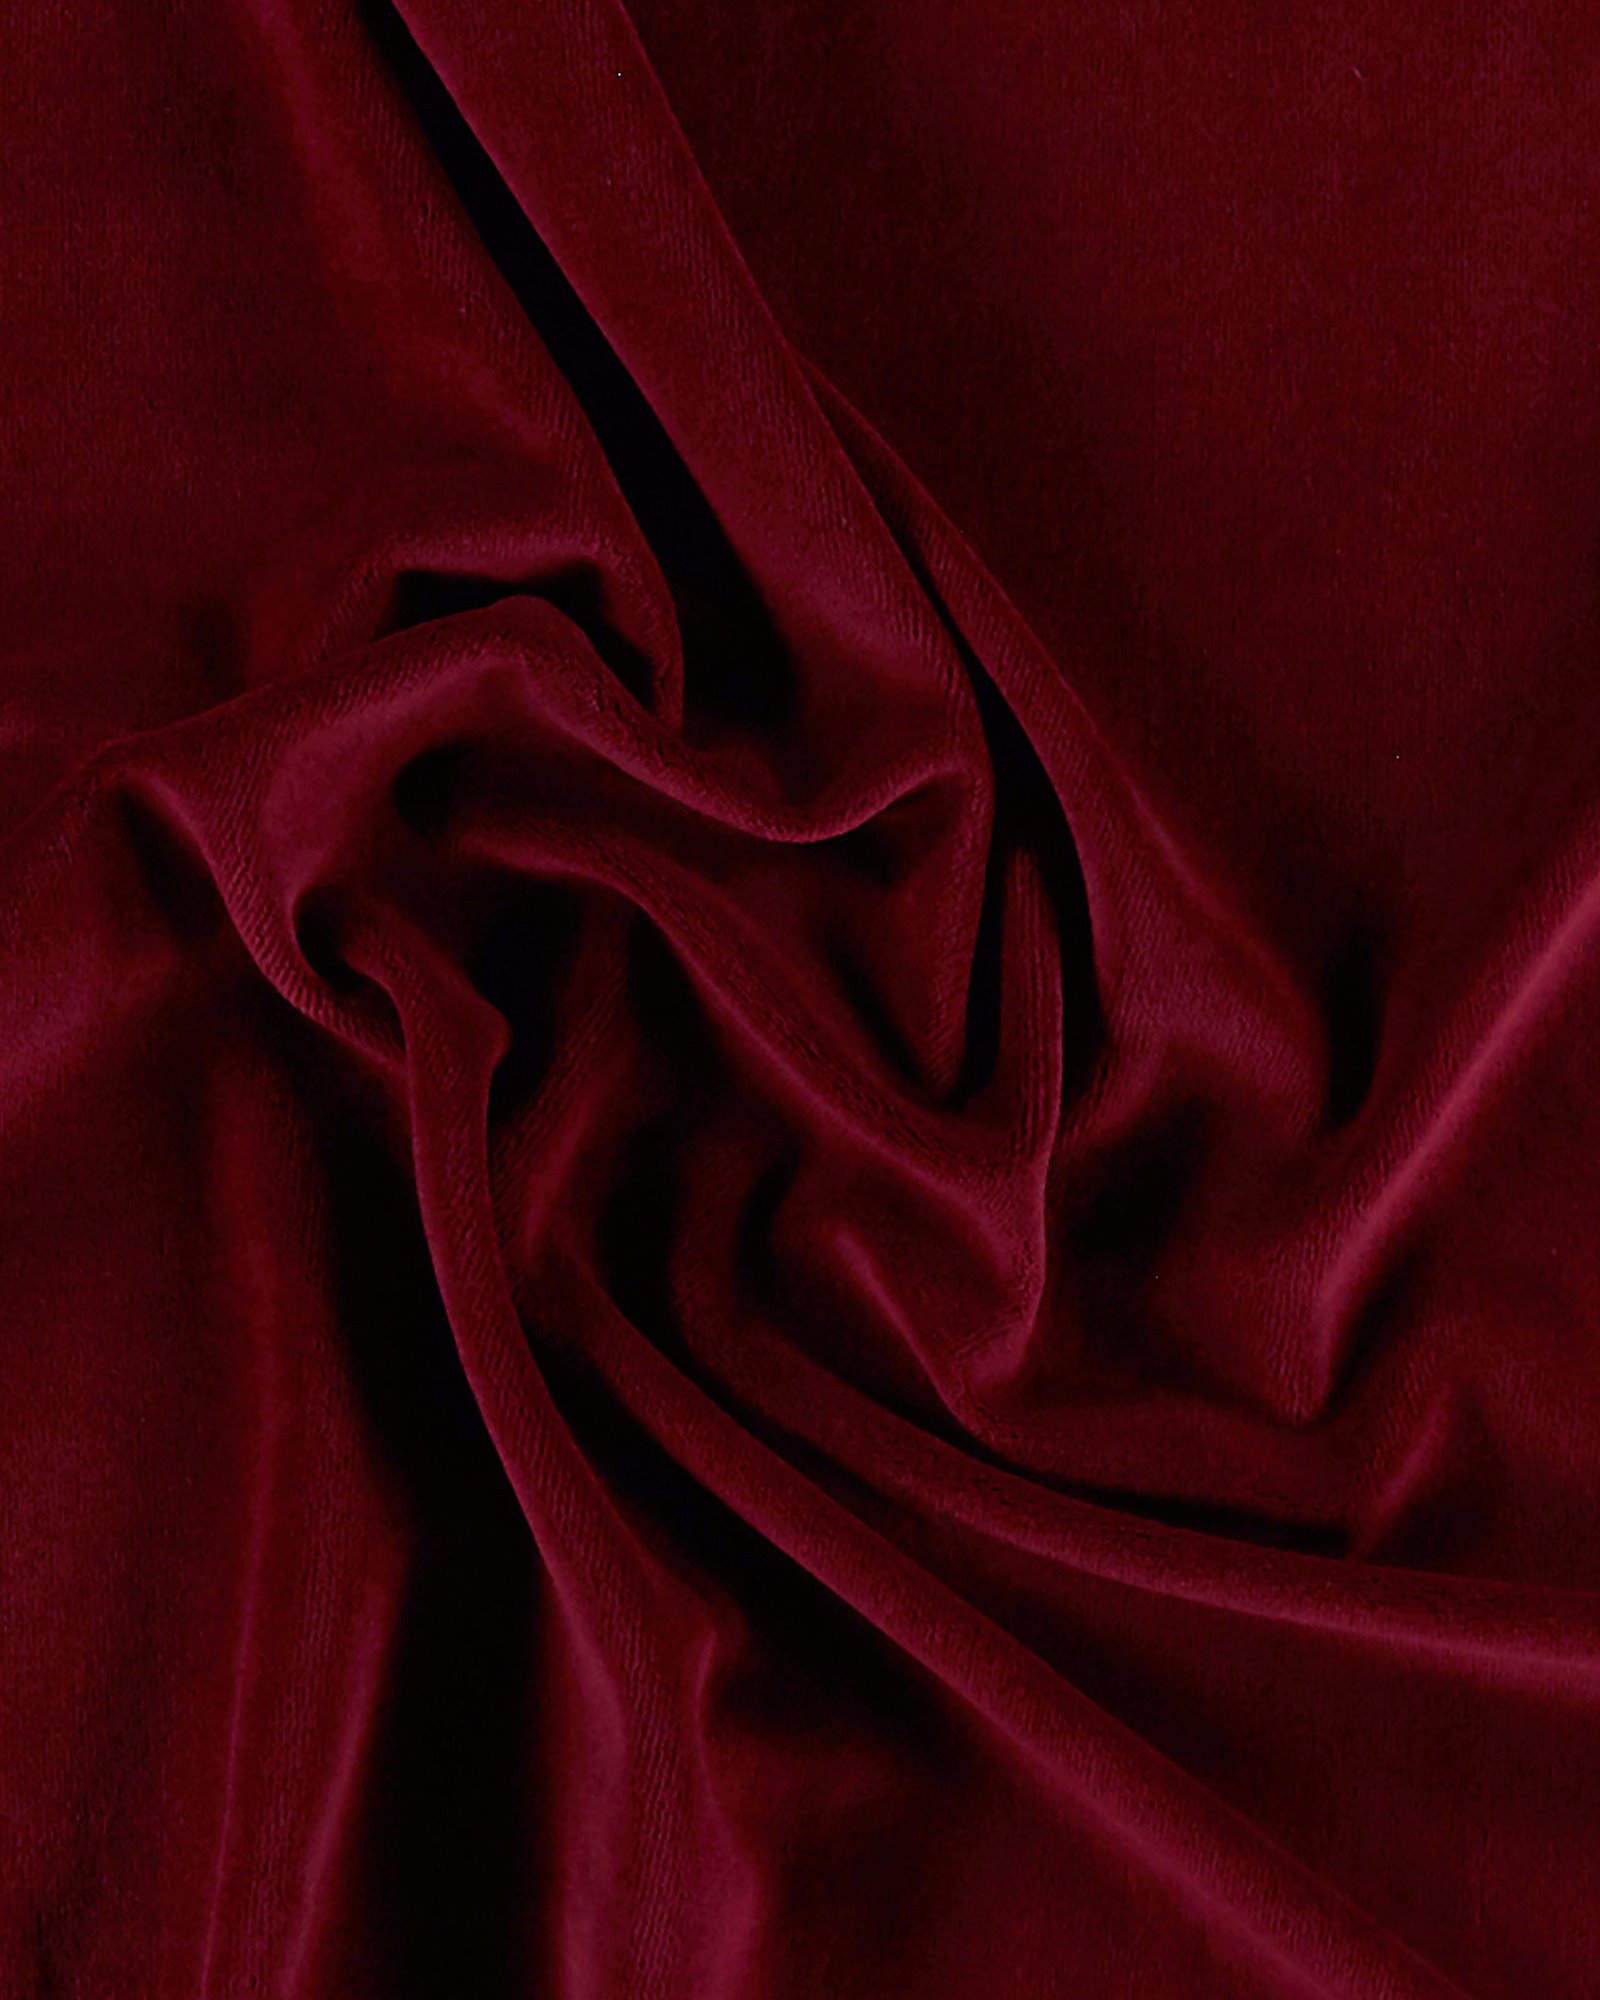 Microfaser Samt Stoff Velvet Touch Farbe Rubin-Rot